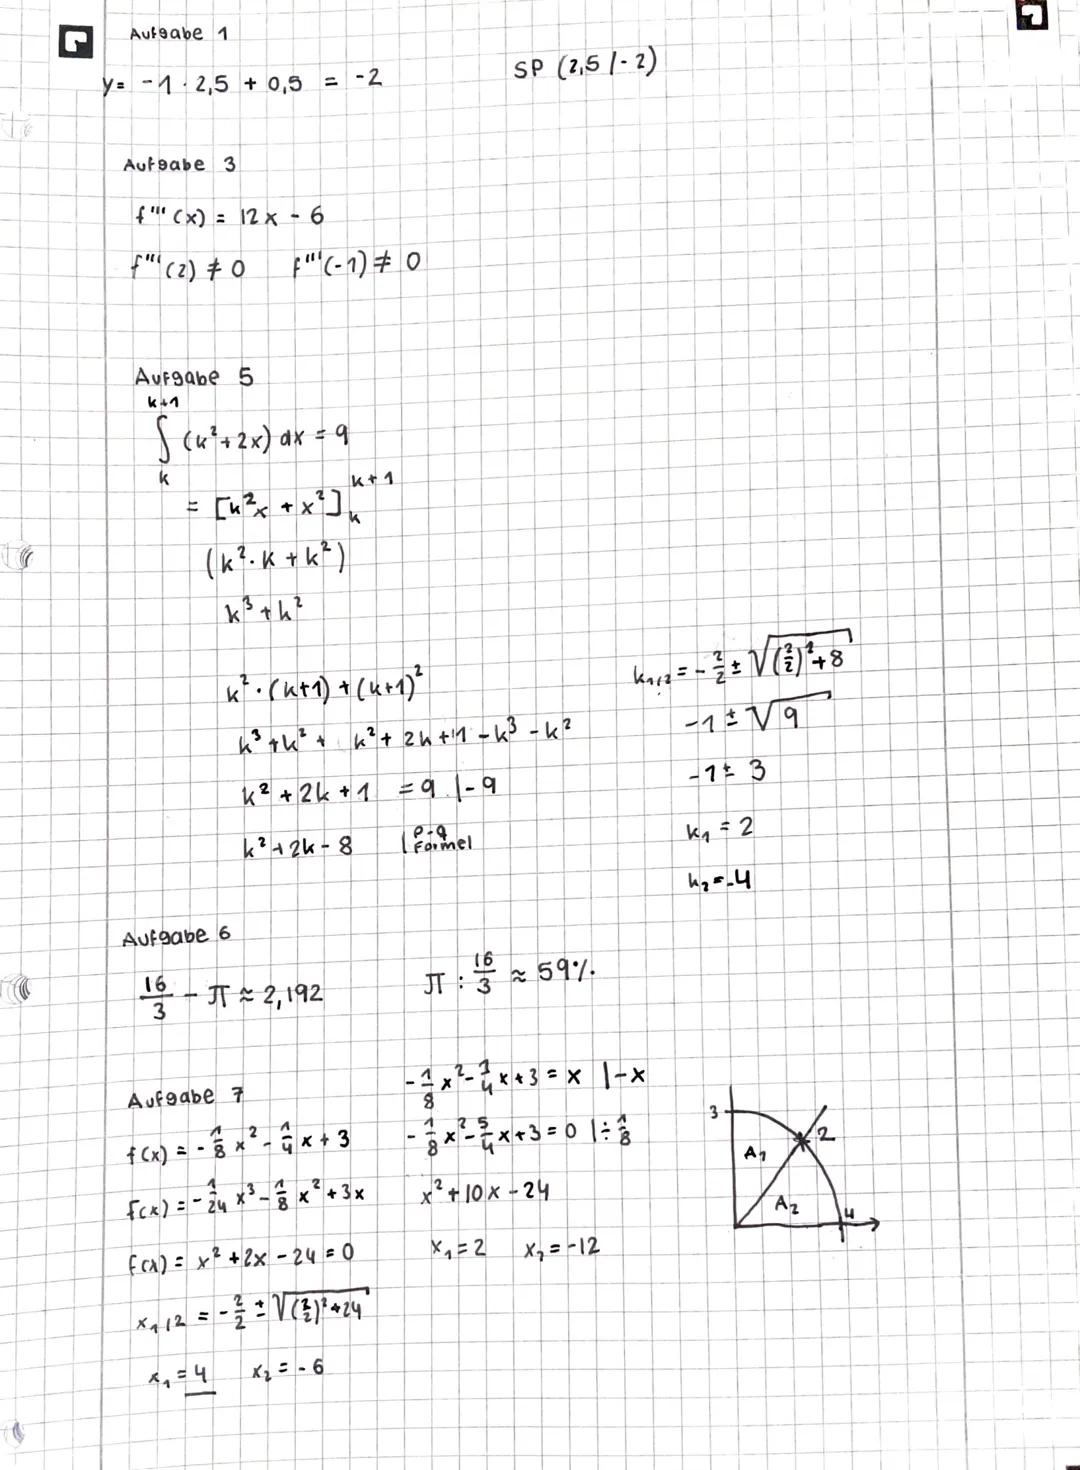 .
Teil A: hilfsmittelfreier Teil (20 Minuten)
Aufgabe 1: Bestimmen Sie die Ableitungen f'(x) und fassen Sie soweit wie
möglich zusammen.
a) 